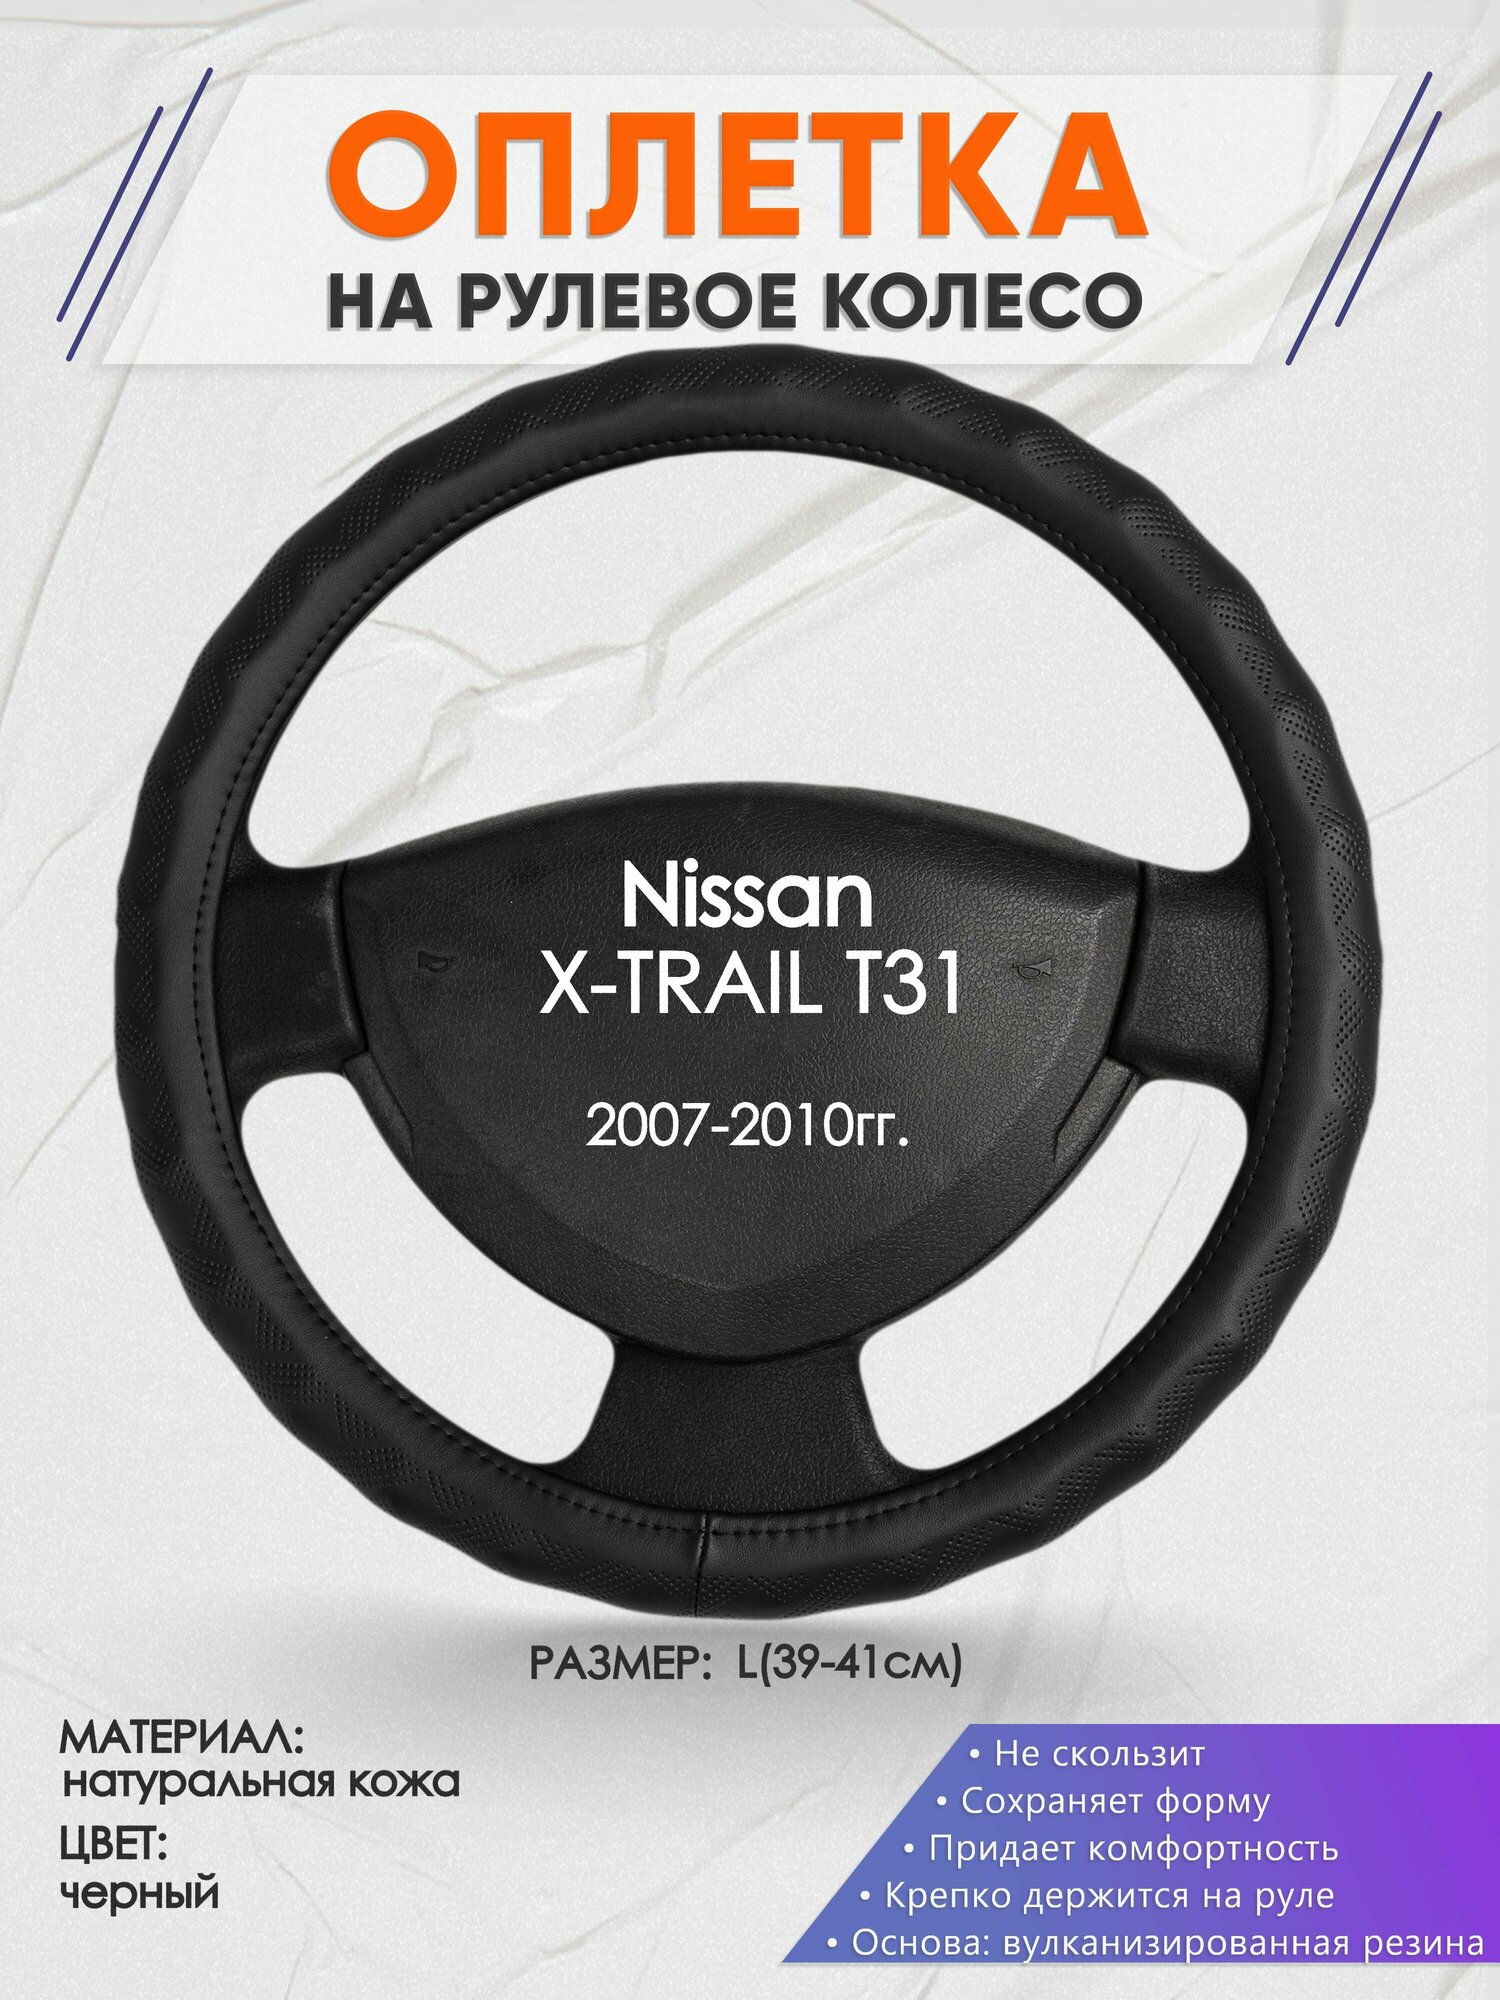 Оплетка на руль для Nissan X-TRAIL T31(Ниссан Икс Трейл) 2007-2010, L(39-41см), Натуральная кожа 26